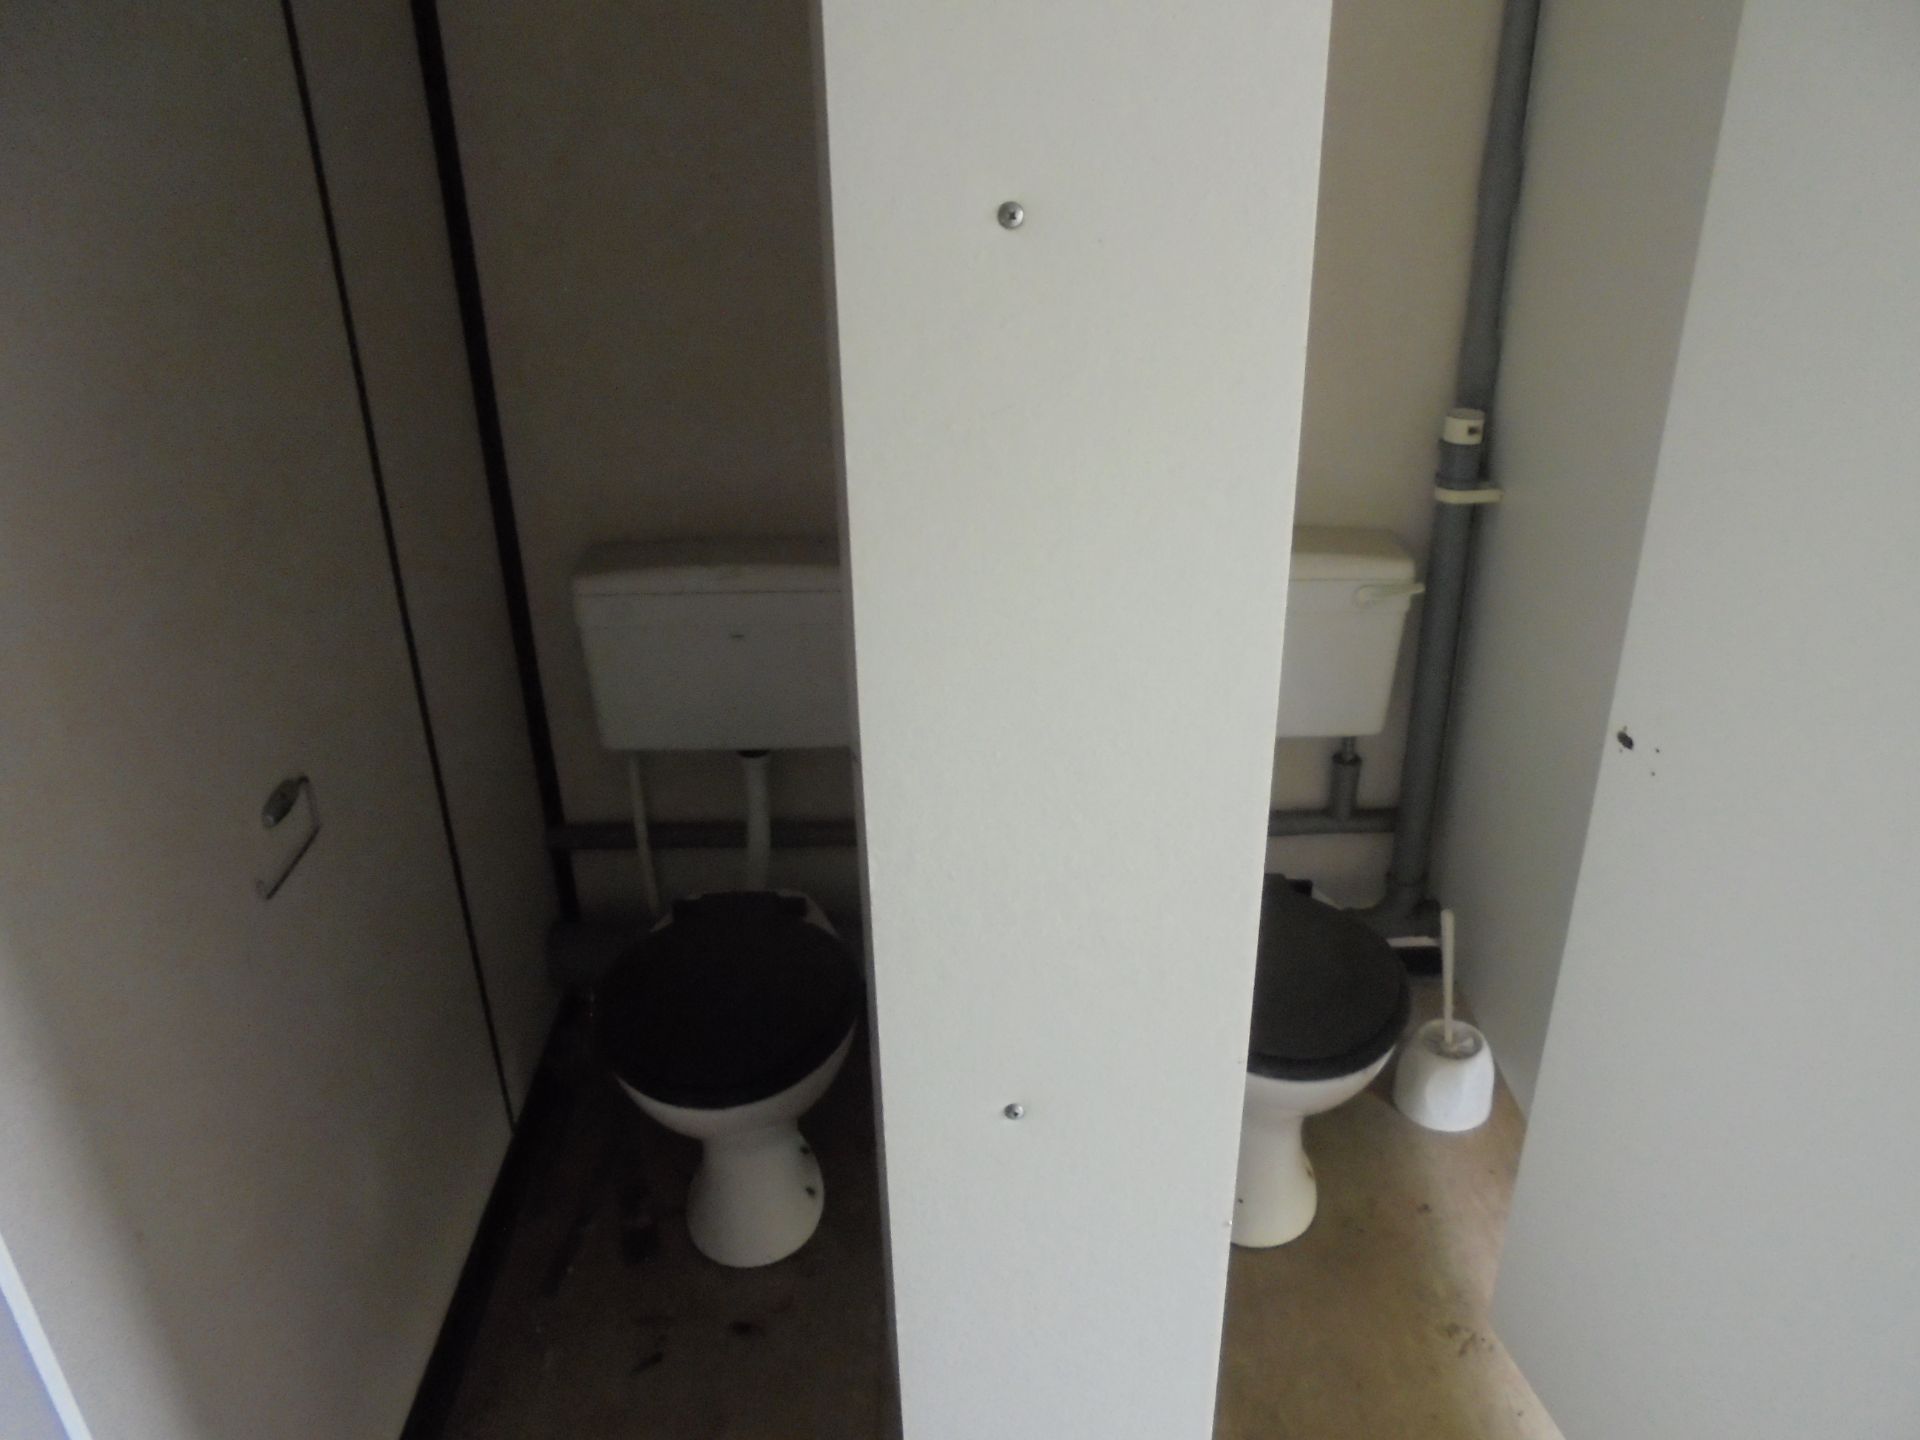 E69204 12ft x 9ft Anti Vandal 2+1 Toilet - Image 7 of 8